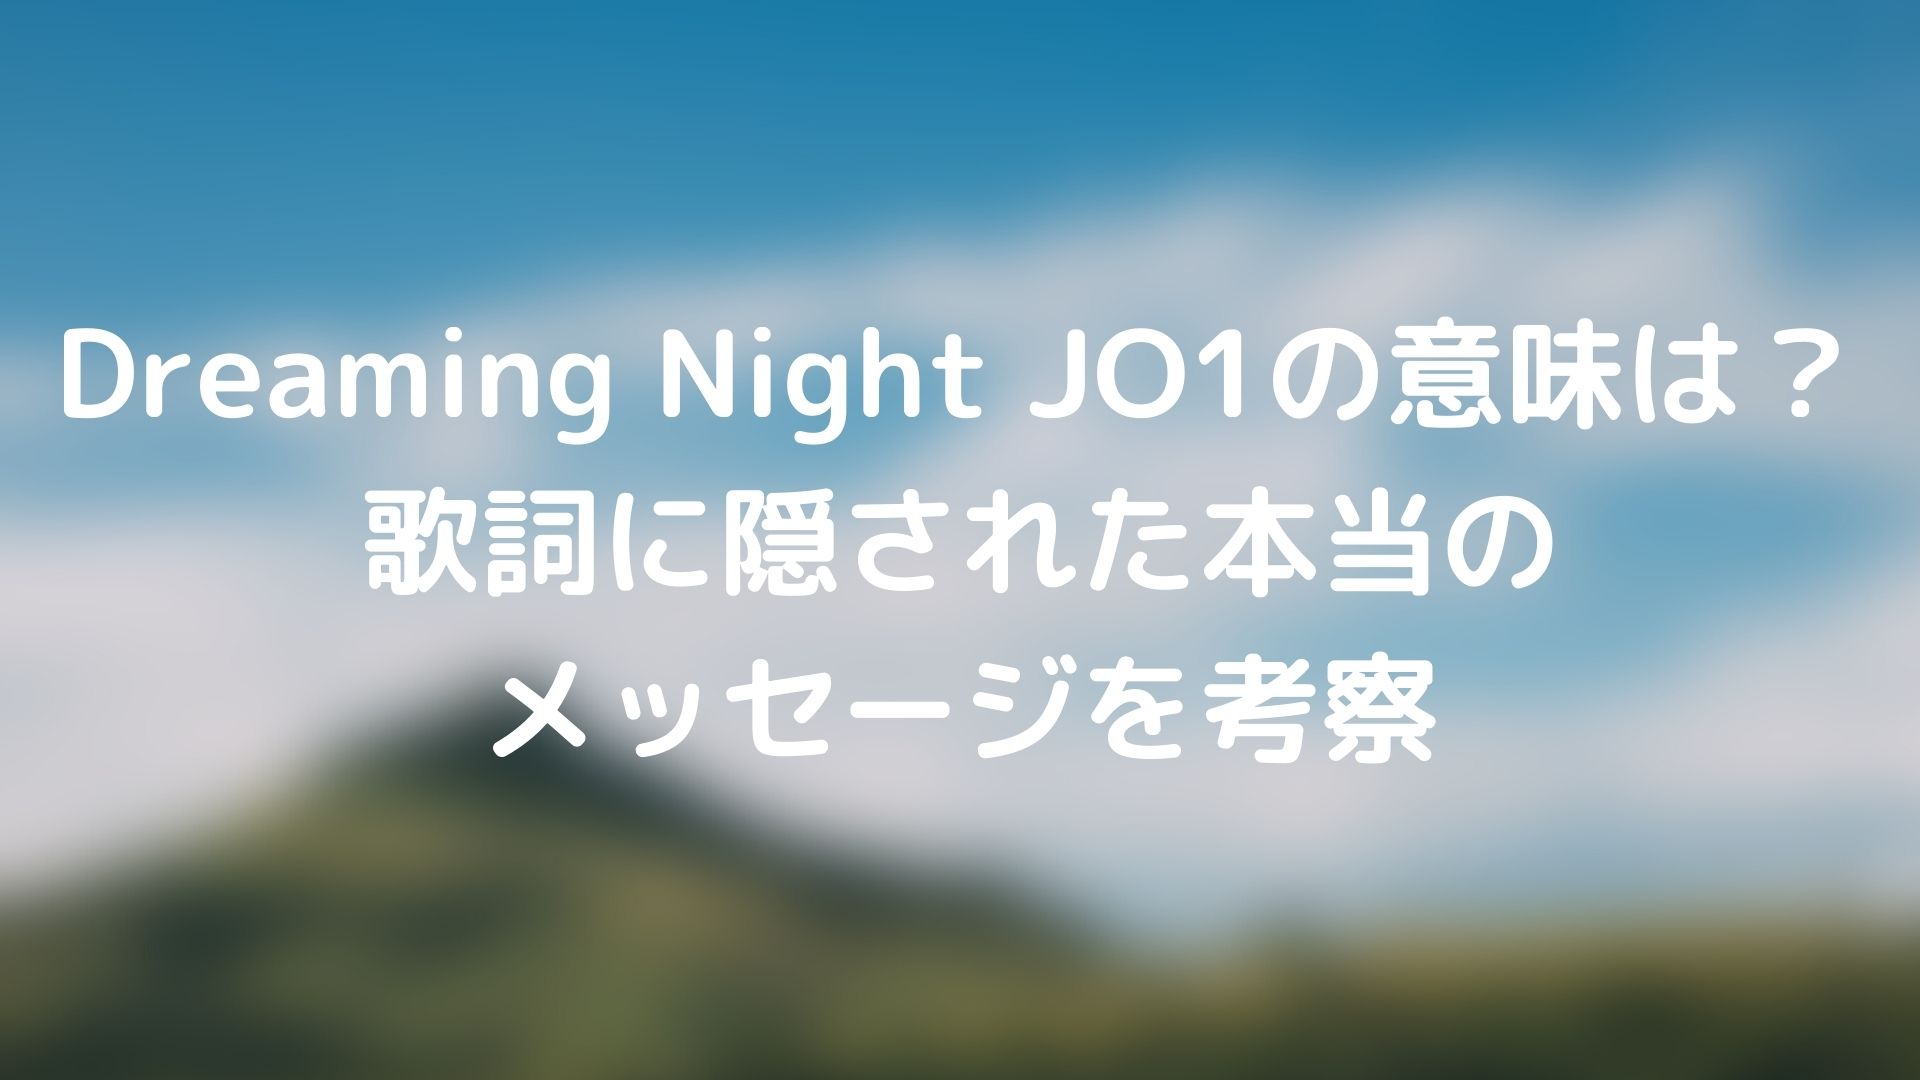 Dreaming Night Jo1の意味は 歌詞に隠された本当のメッセージを考察 Tickledpink